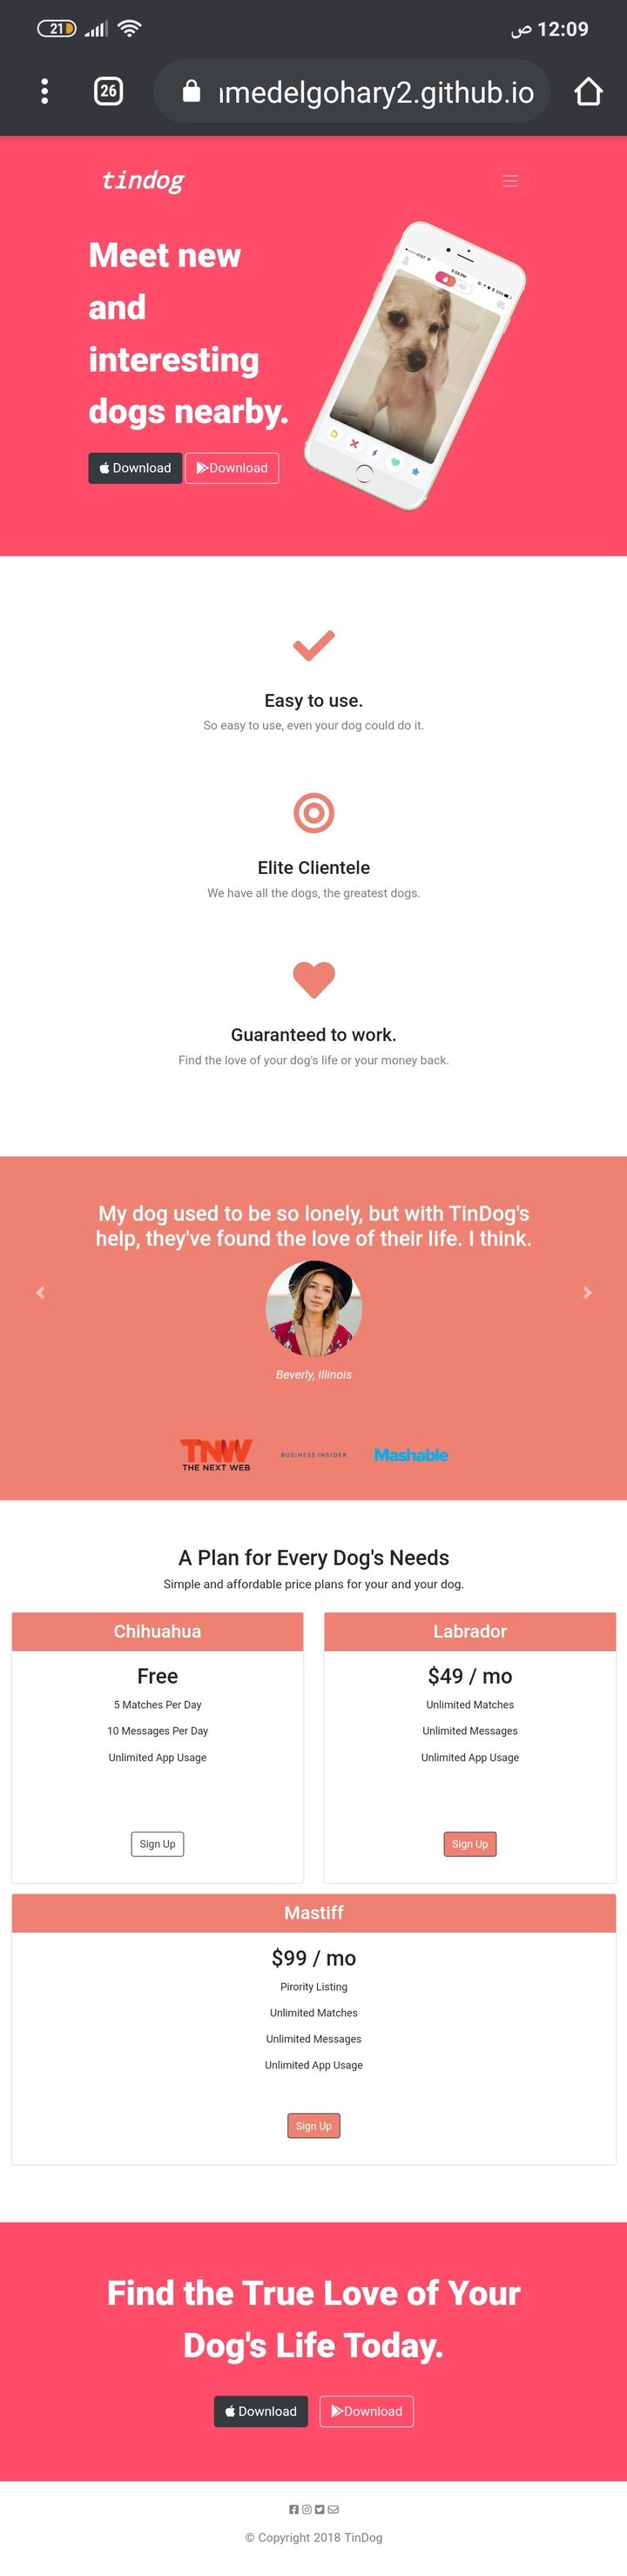 موقع tindog